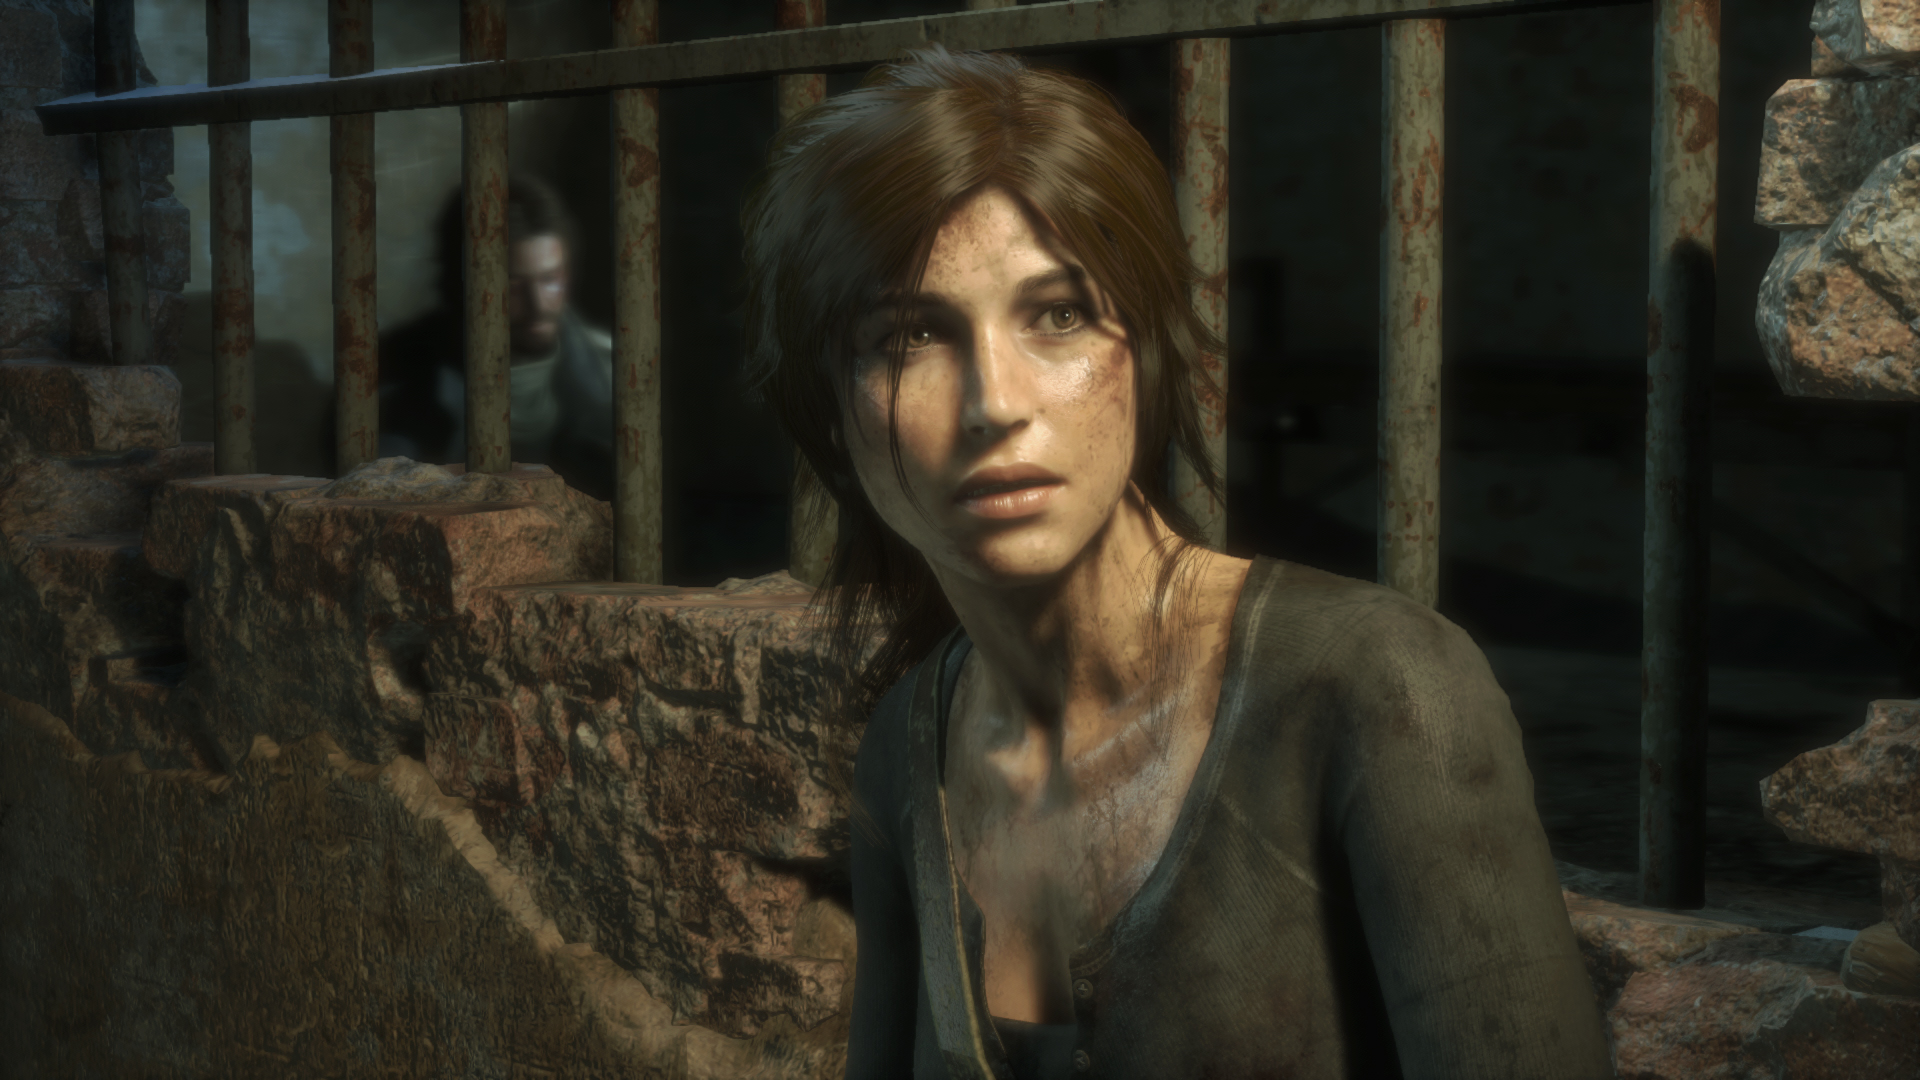 Immagine pubblicata in relazione al seguente contenuto: Guarda il video con 14 minuti di gameplay tratti da Rise of the Tomb Raider | Nome immagine: news23217_Rise-of-the-Tomb-Raider-Screenshot_2.jpg